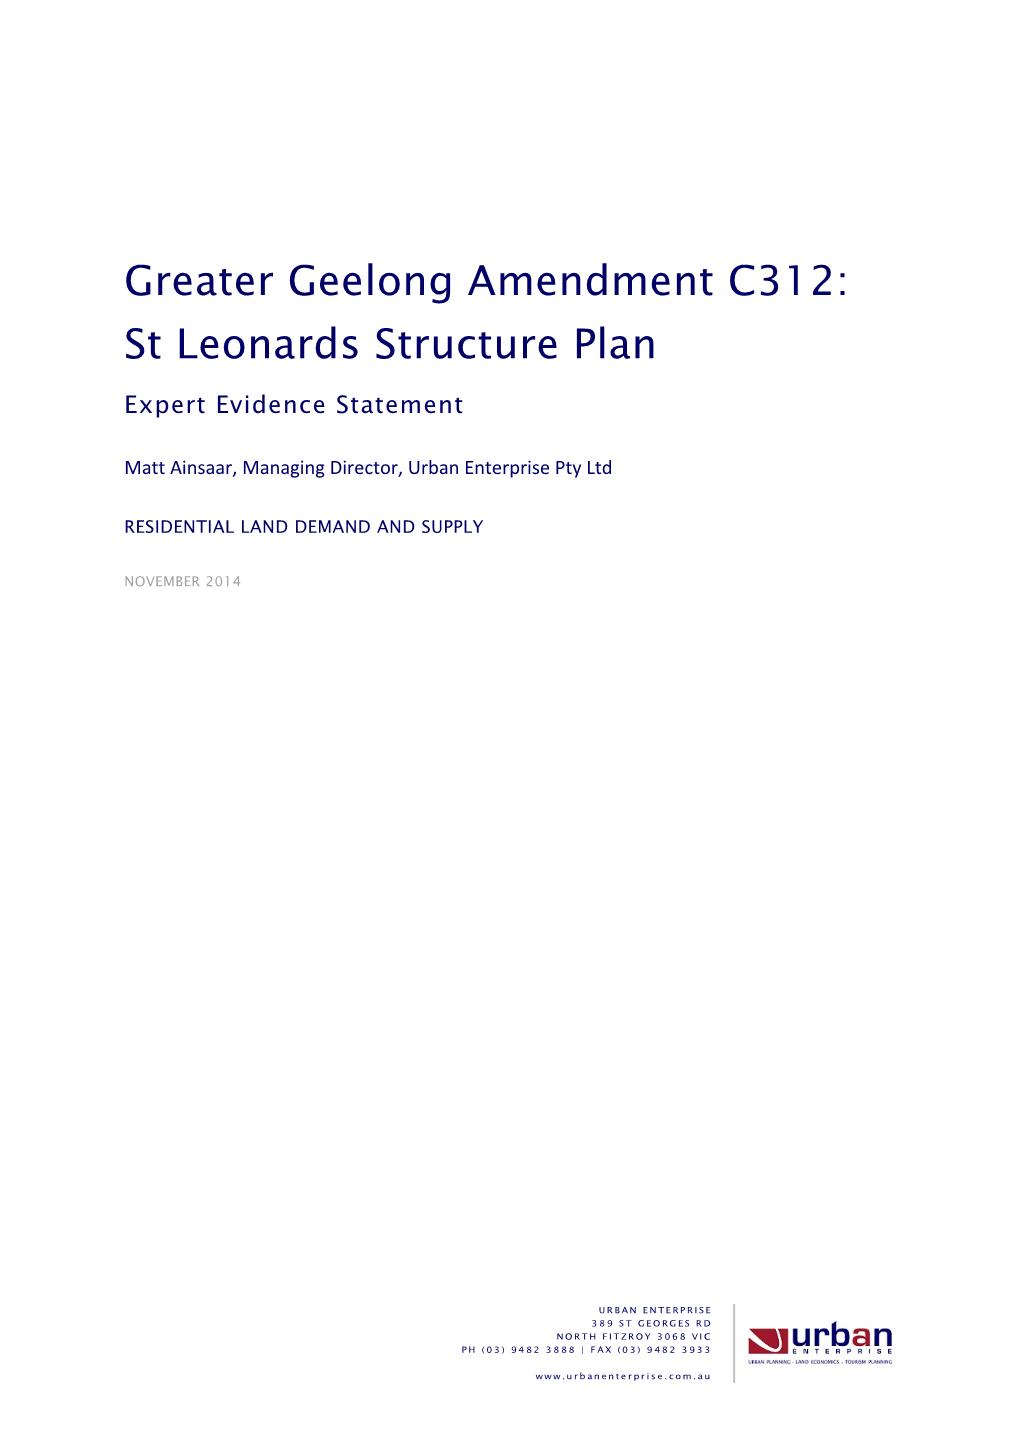 Greater Geelong Amendment C312: St Leonards Structure Plan